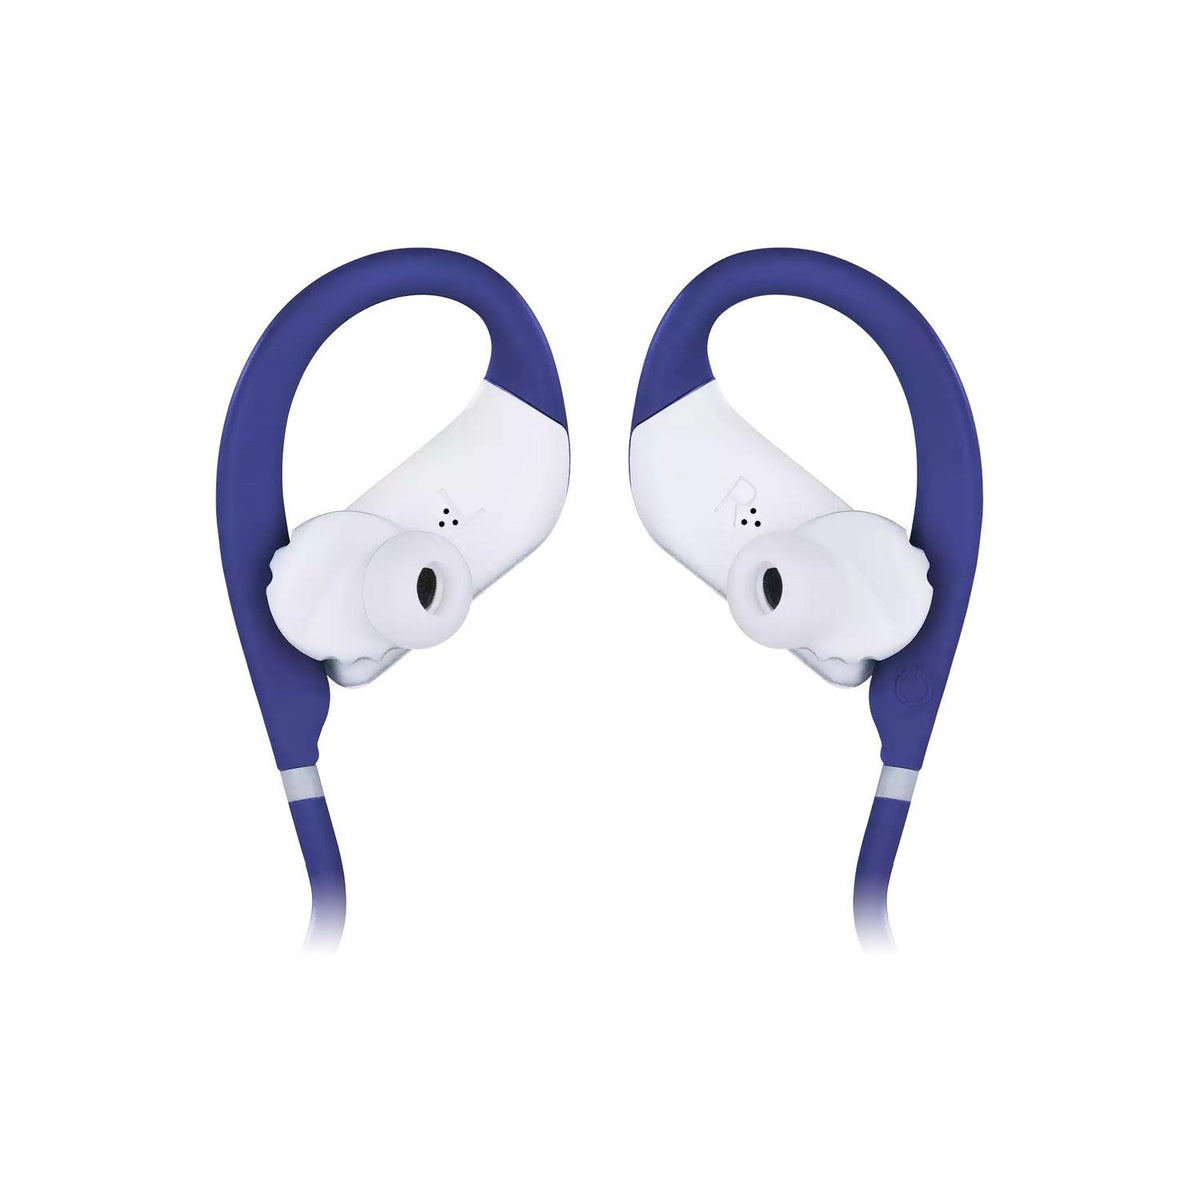 JBL Audífonos Inalámbricos Audífonos Inalámbricos In Ear Endurance JUMP Bluetooth - vertikal